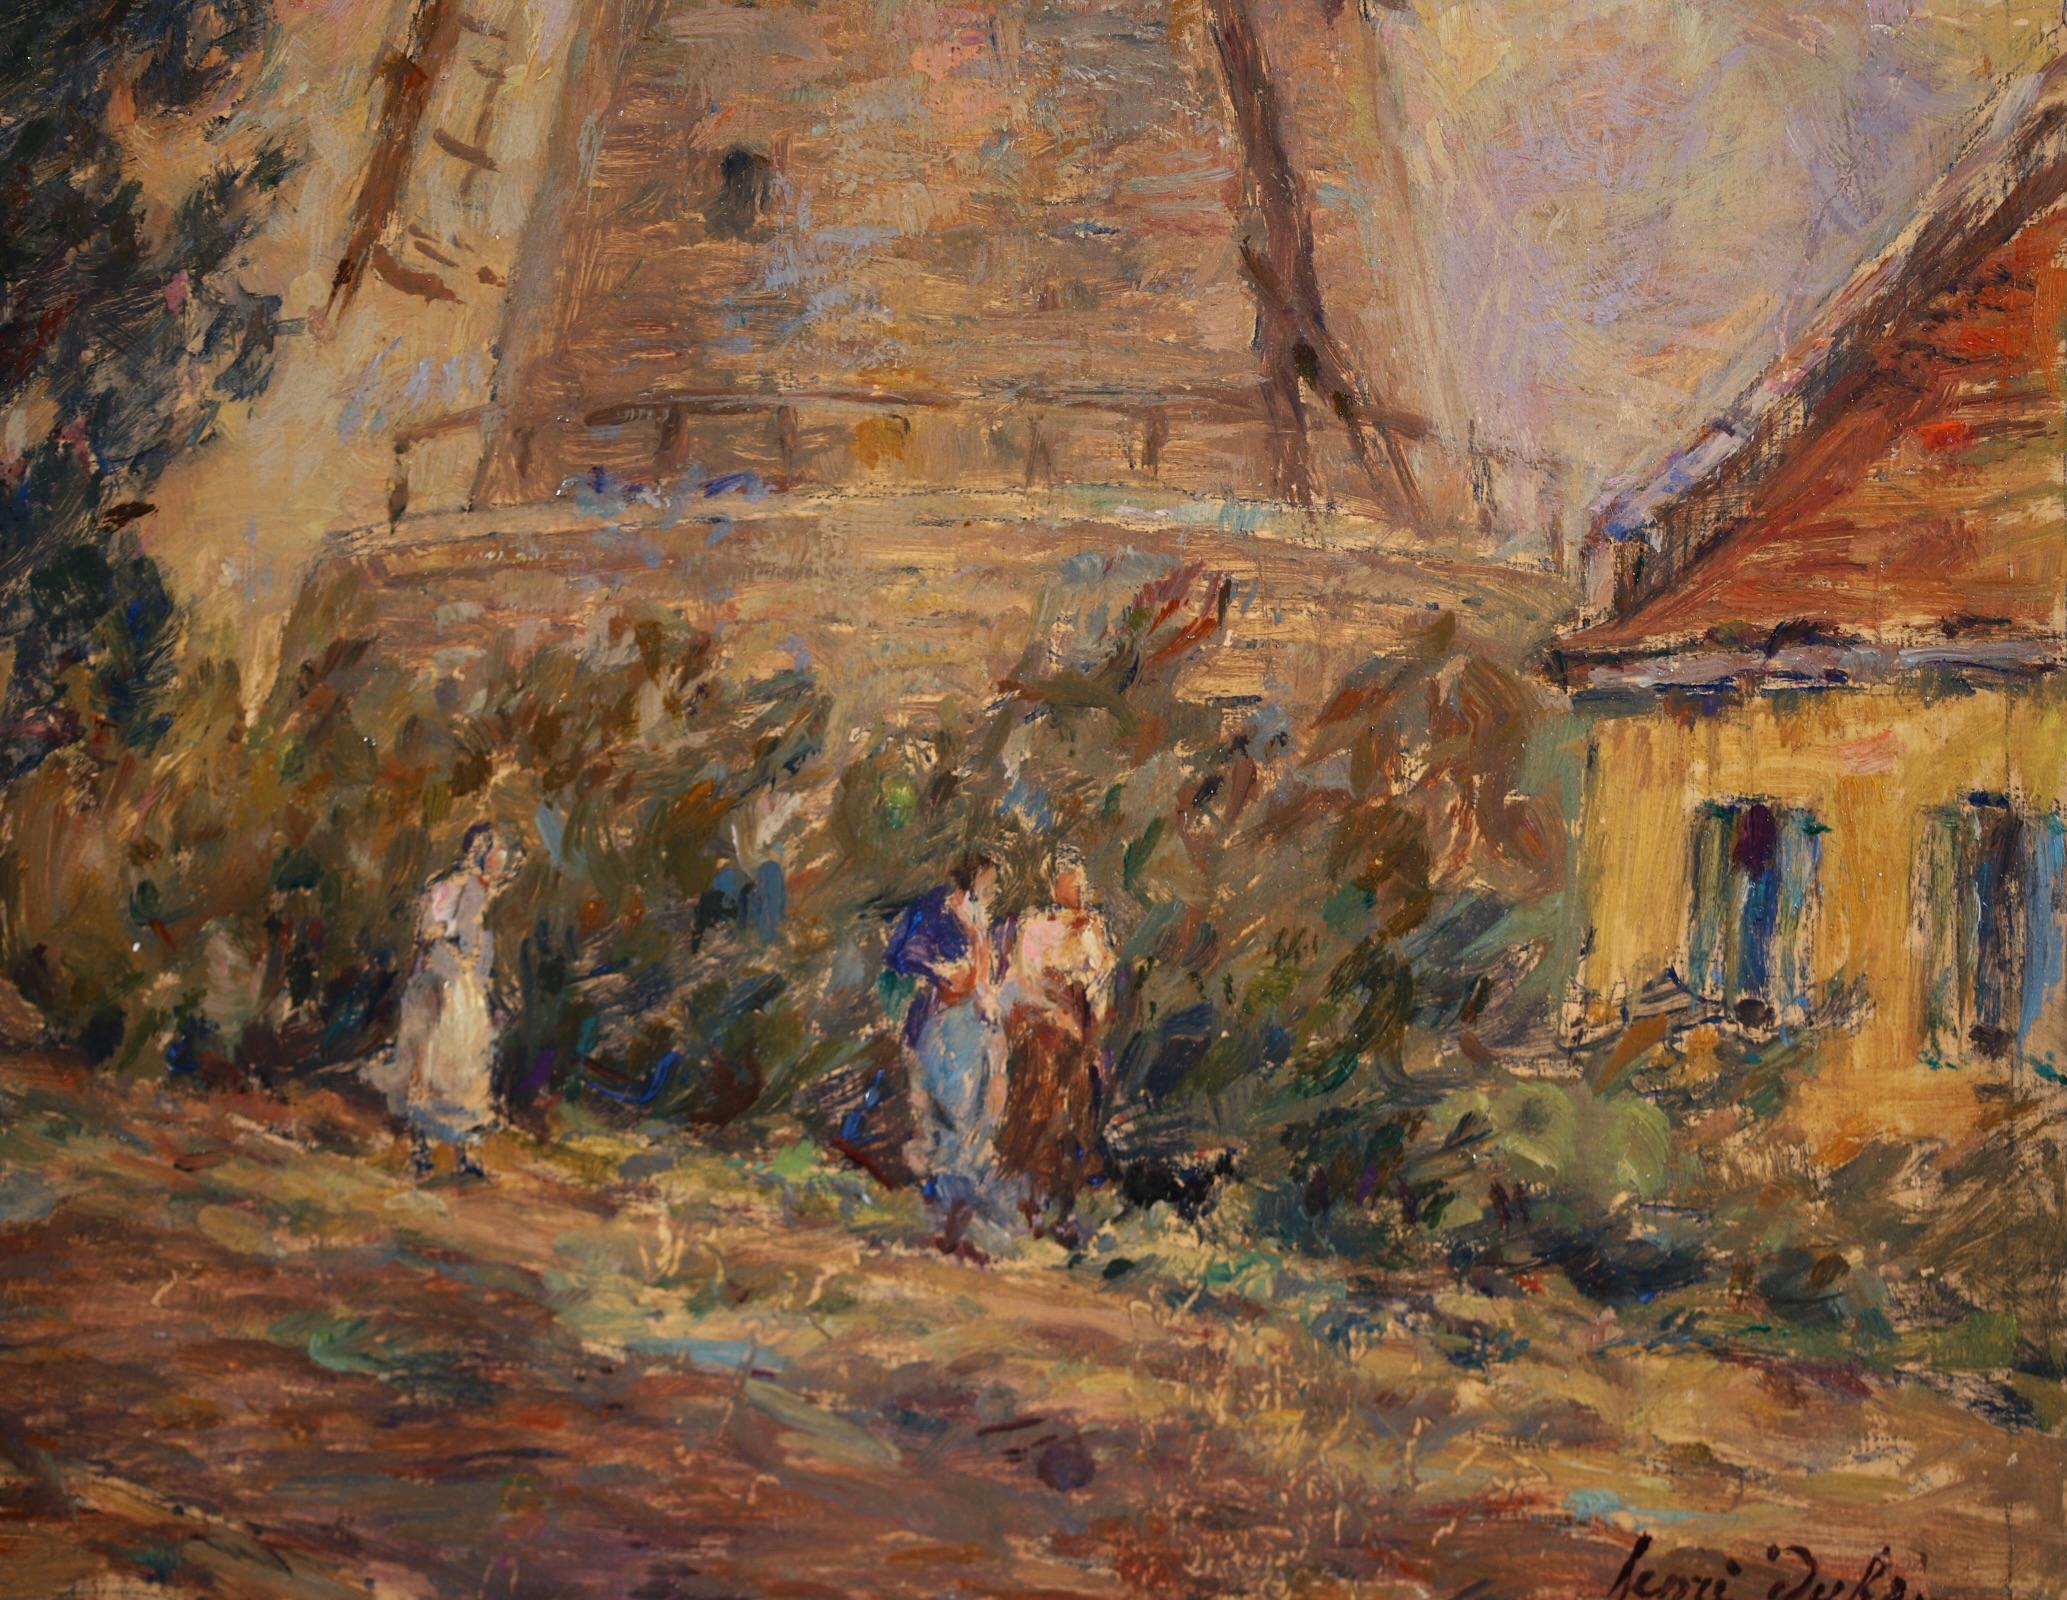 Moulin - Impressionist Oil, Windmill, Figures & Dog in Landscape by Henri Duhem 3